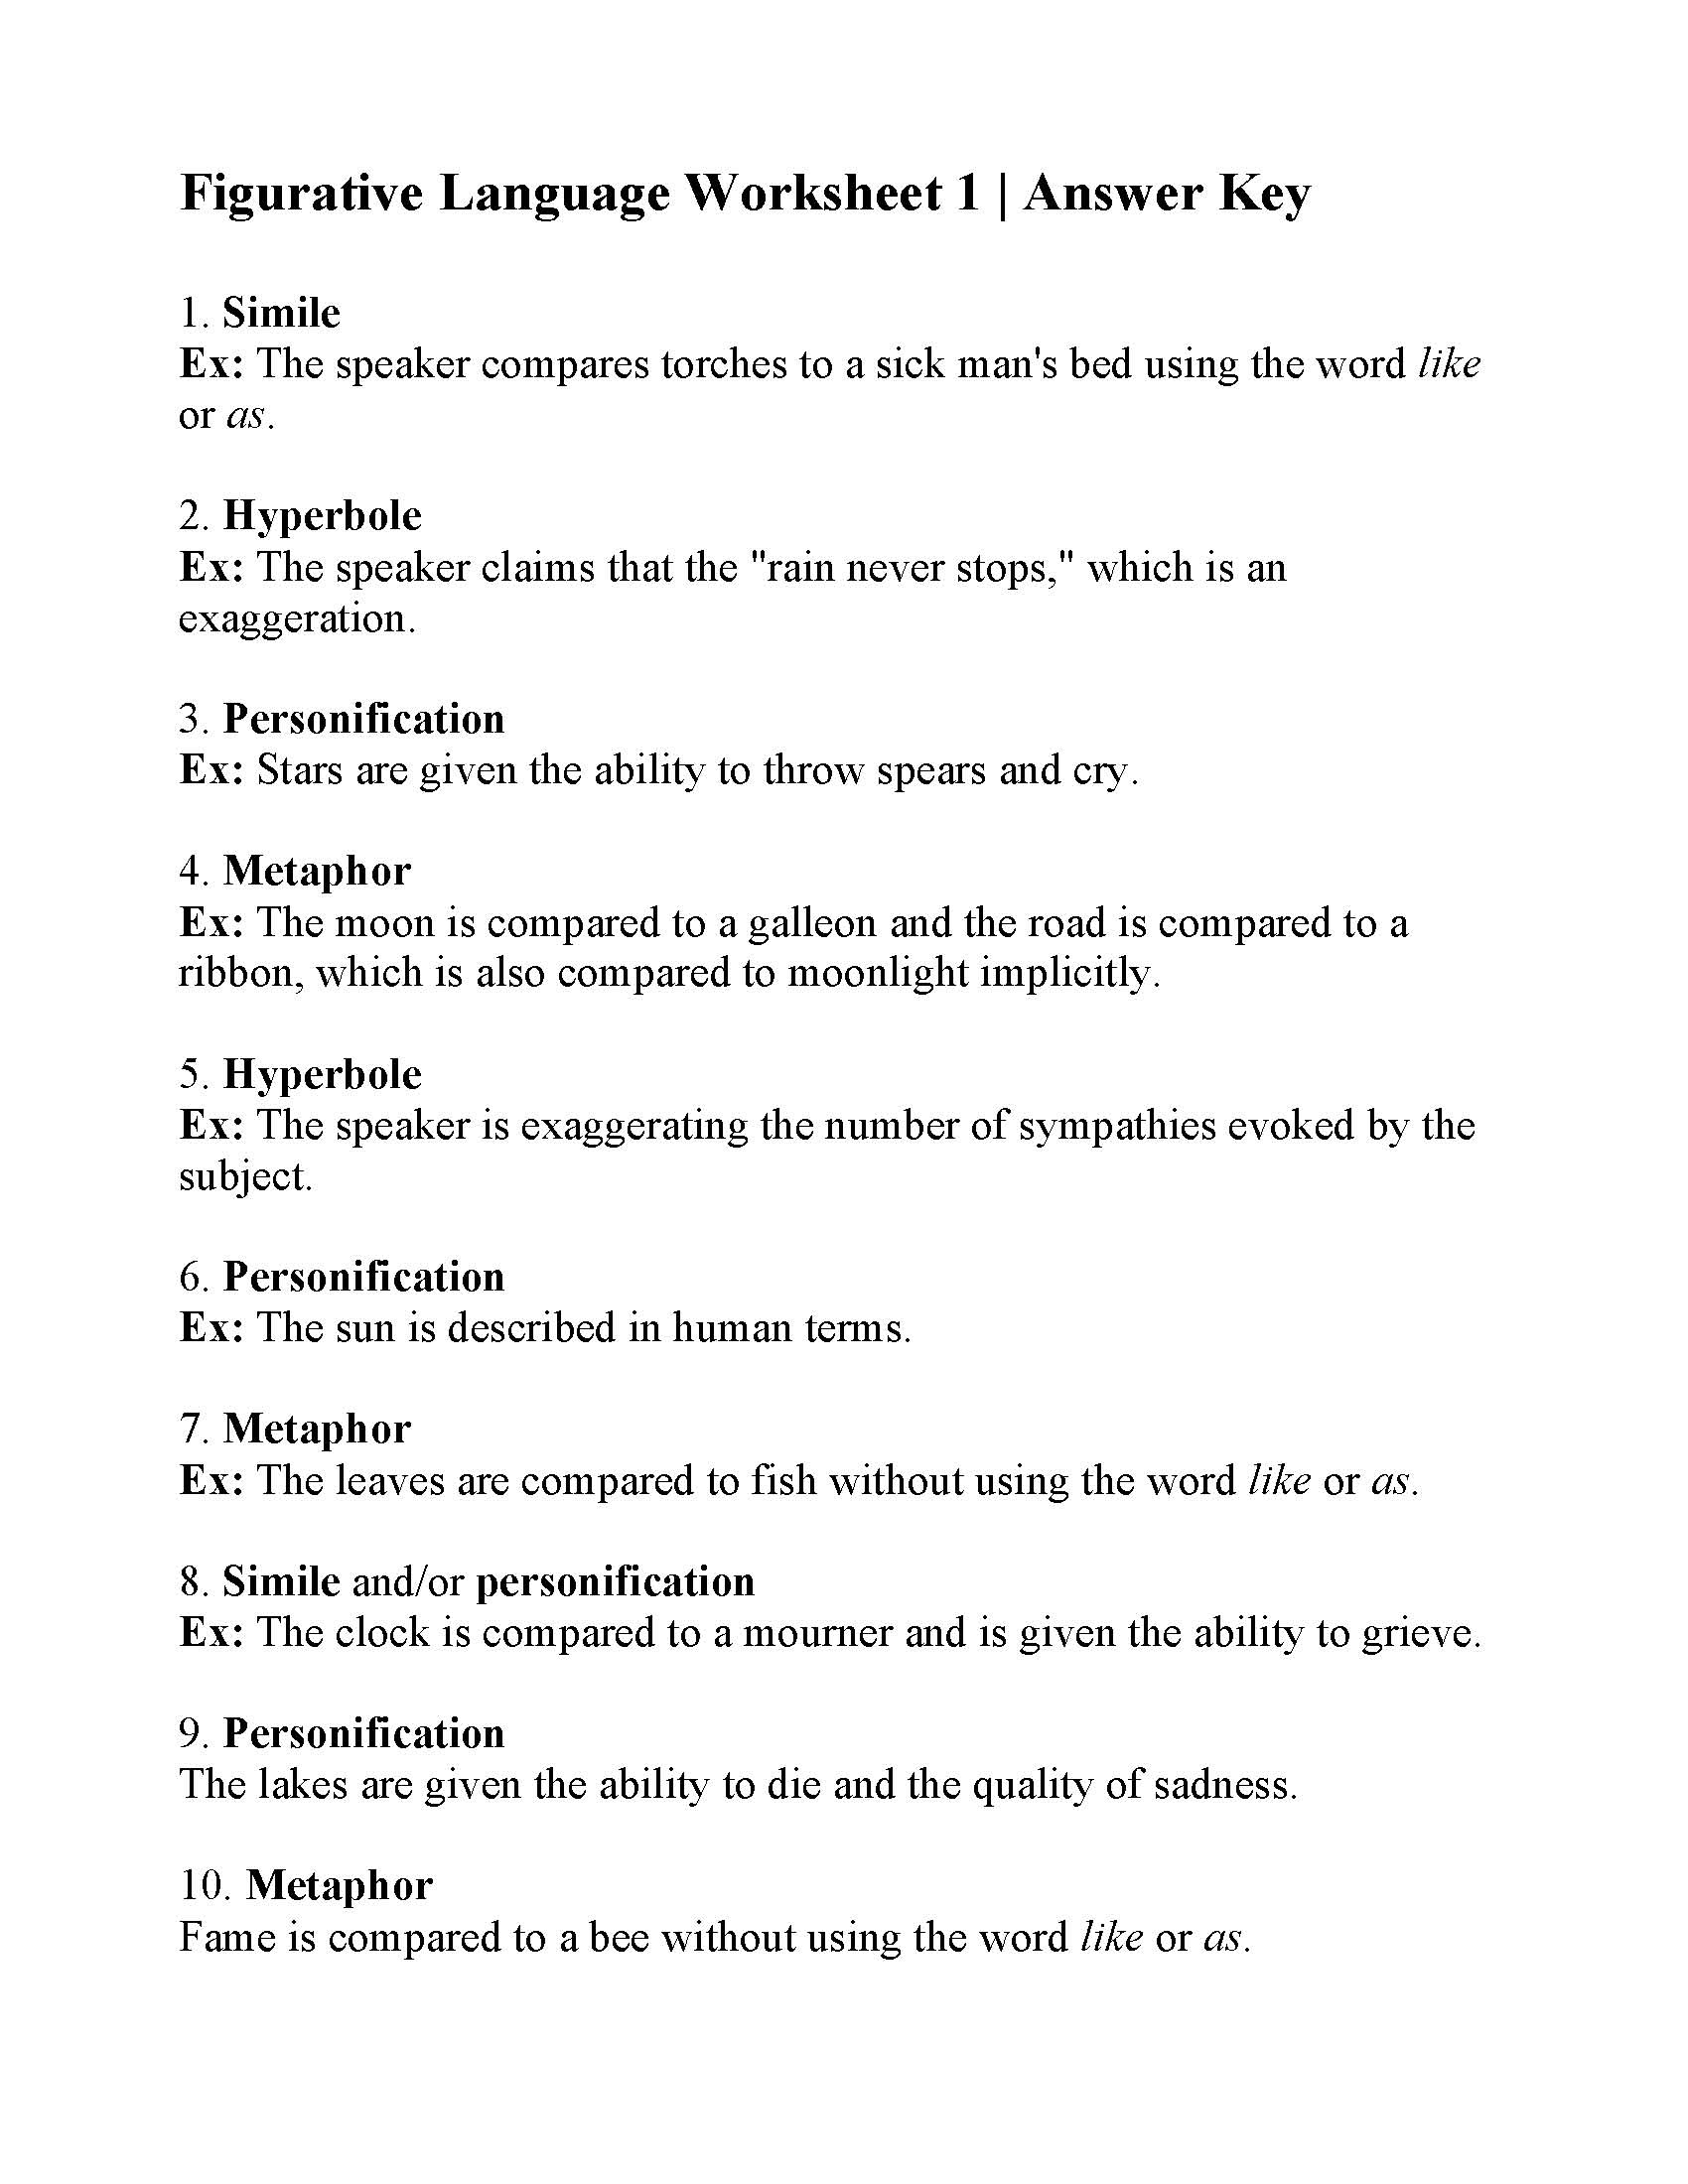 Figurative Language Worksheet 1 Reading Activity